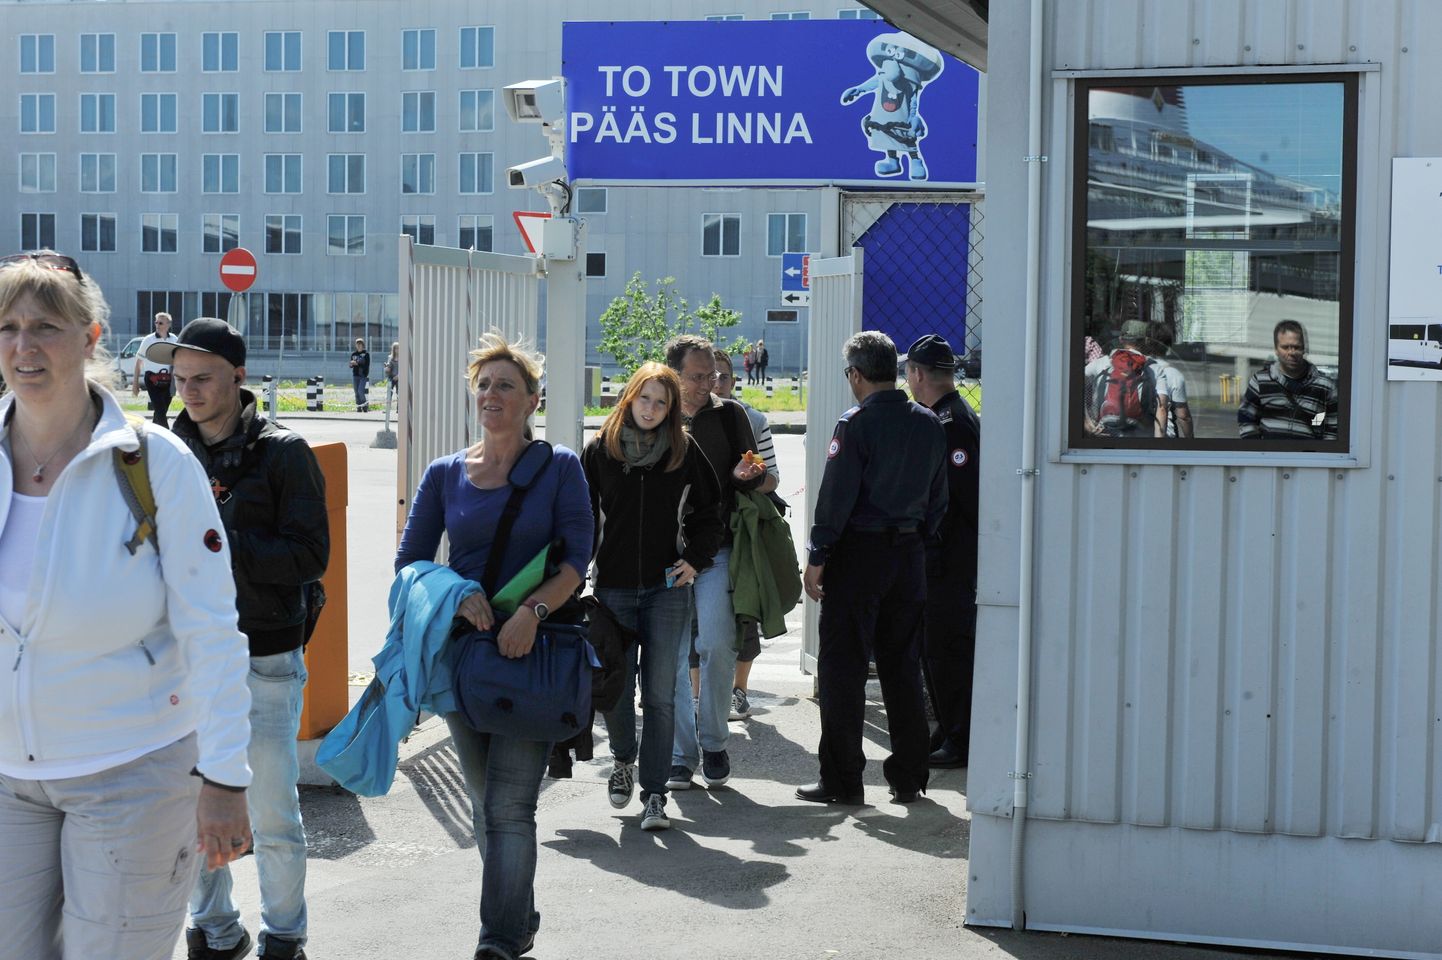 Saksa turistid saabuvad tagasi laevale Tallinnas kruiisilaevade kai ääres peatuvale laevale.